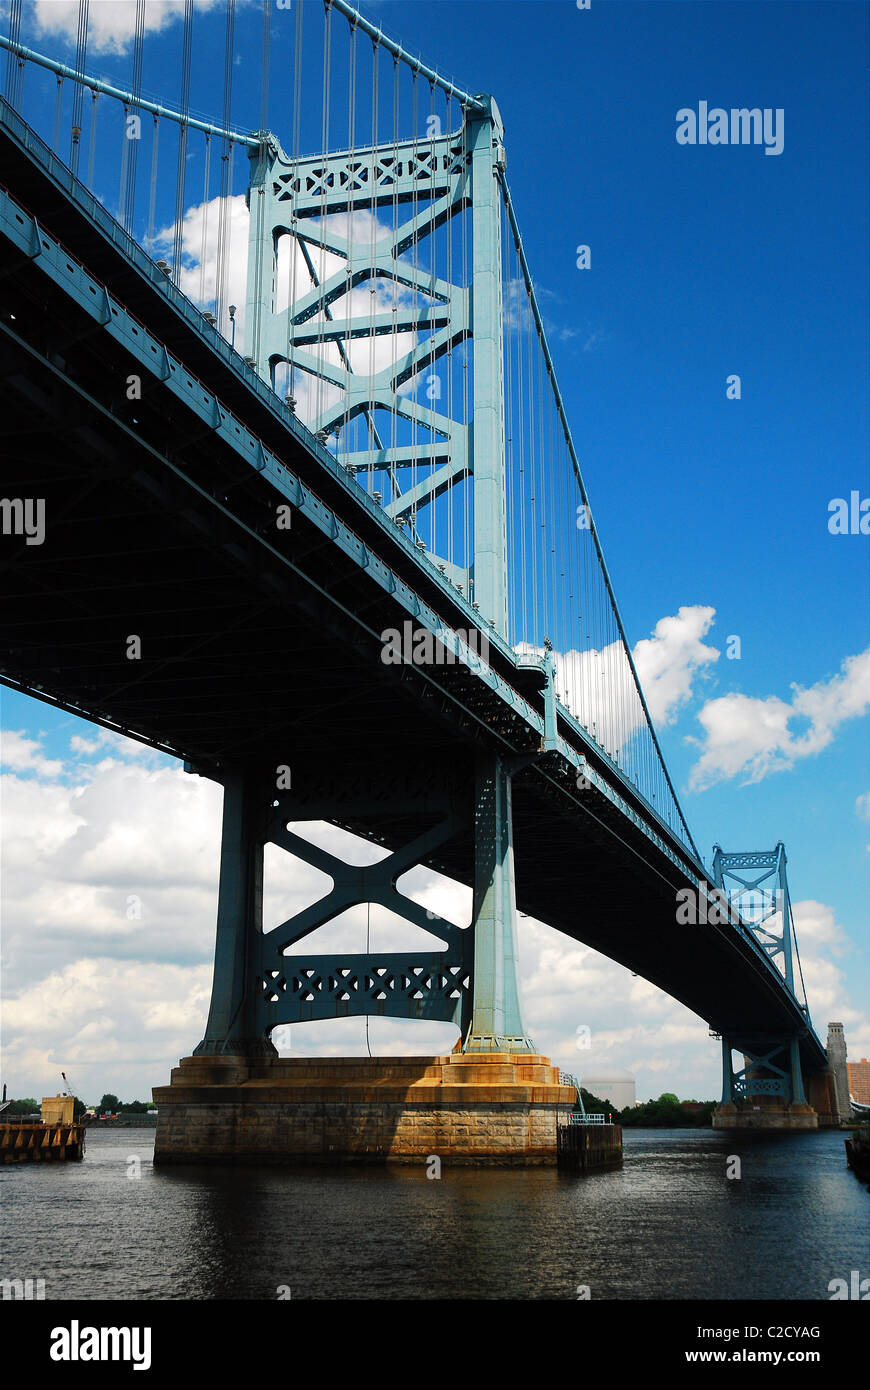 Le Benjamin Franklin Bridge enjambe la rivière Delaware, reliant Philadelphie, PA à Camden, New Jersey. Banque D'Images